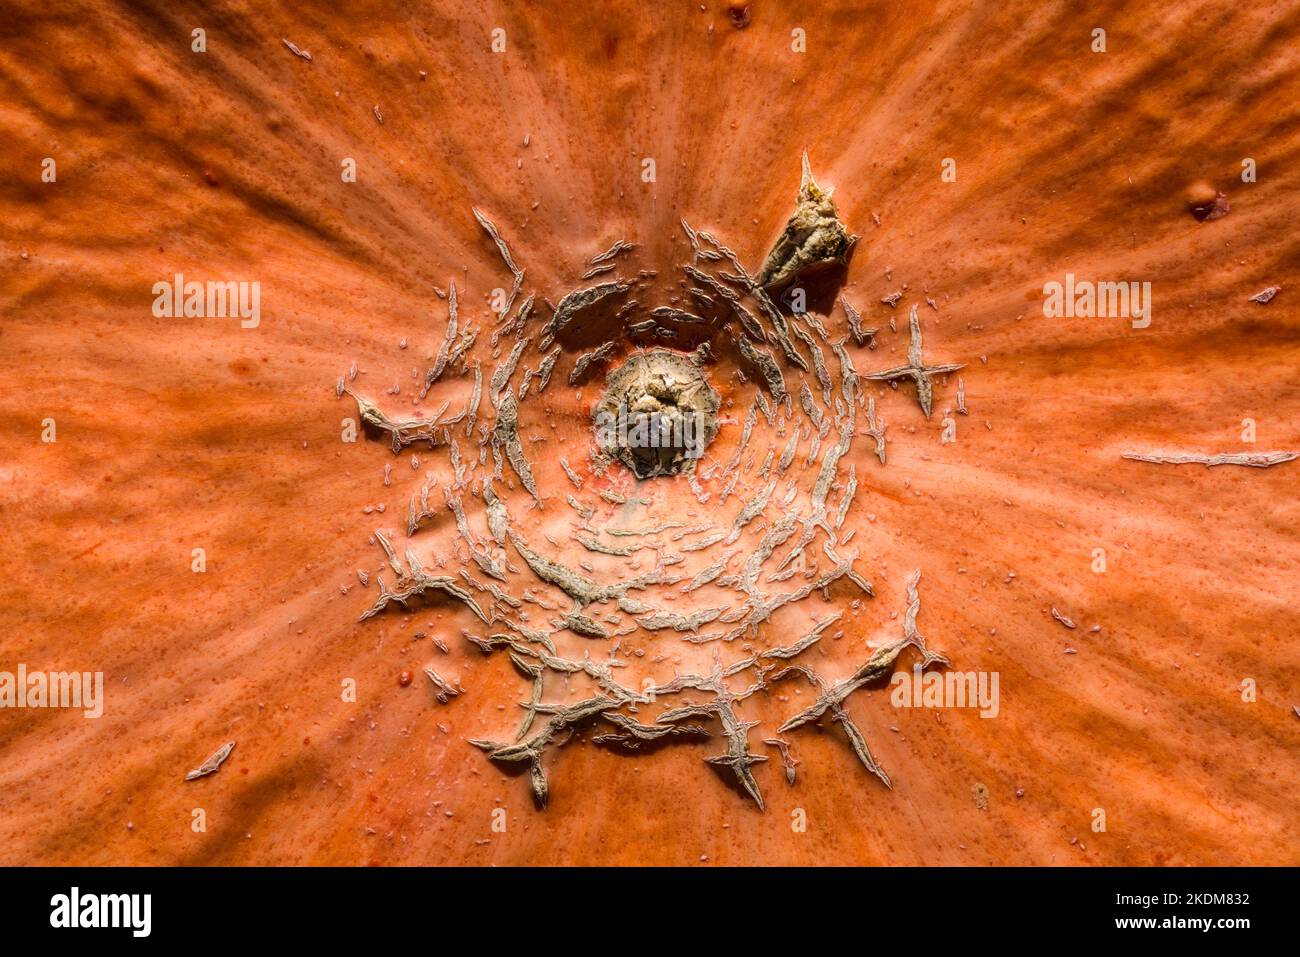 Detail of a pumpkin Stock Photo